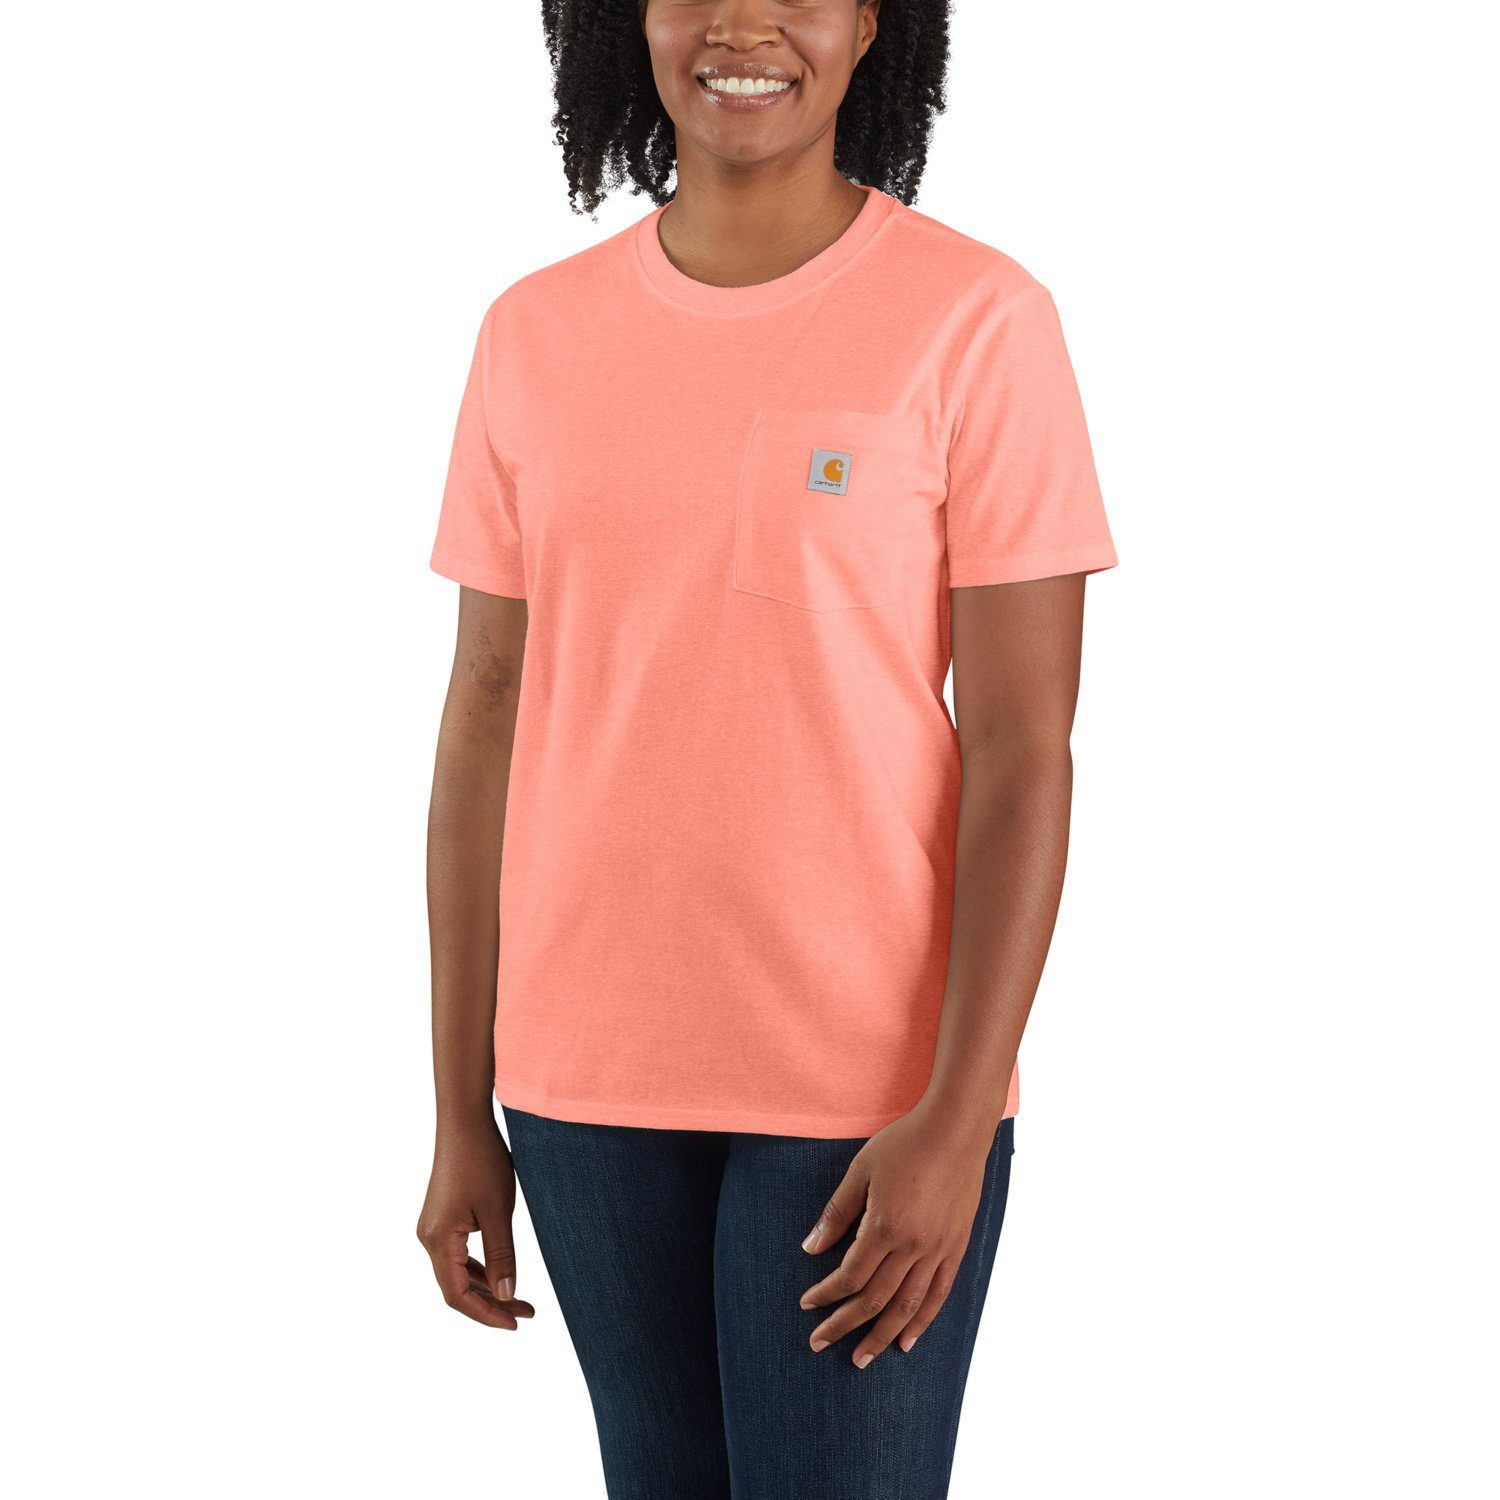 Adult T-Shirt T-Shirt Fit Damen Carhartt Loose hibiscus Heavyweight Carhartt Short-Sleeve Pocket heather